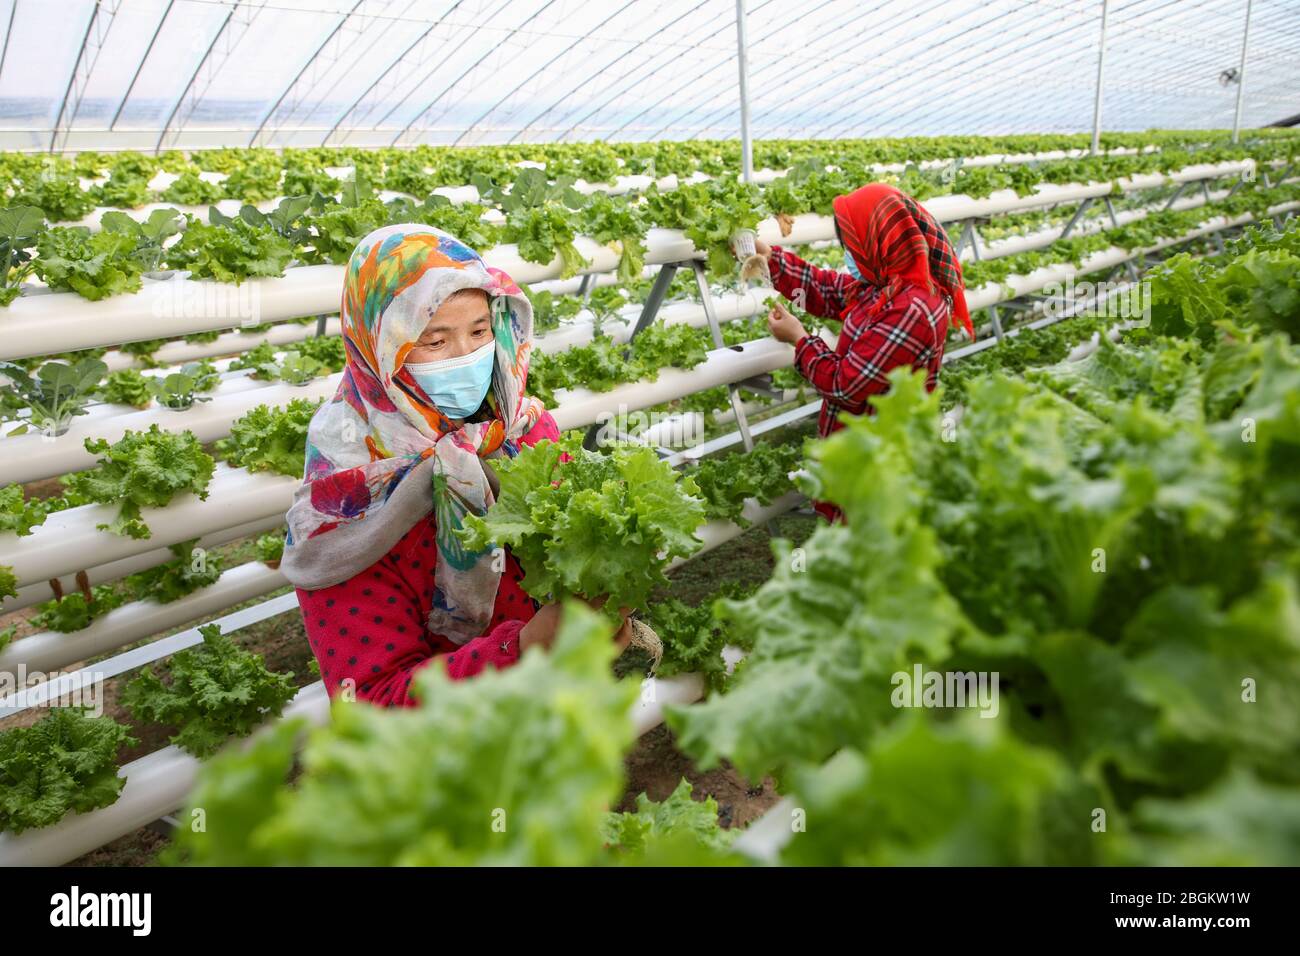 Les gens vérifient les légumes plantés dans une serre de culture sans soillure dans la ville de Lianyungang, province du Jiangsu en Chine orientale, 18 mars 2020. Banque D'Images